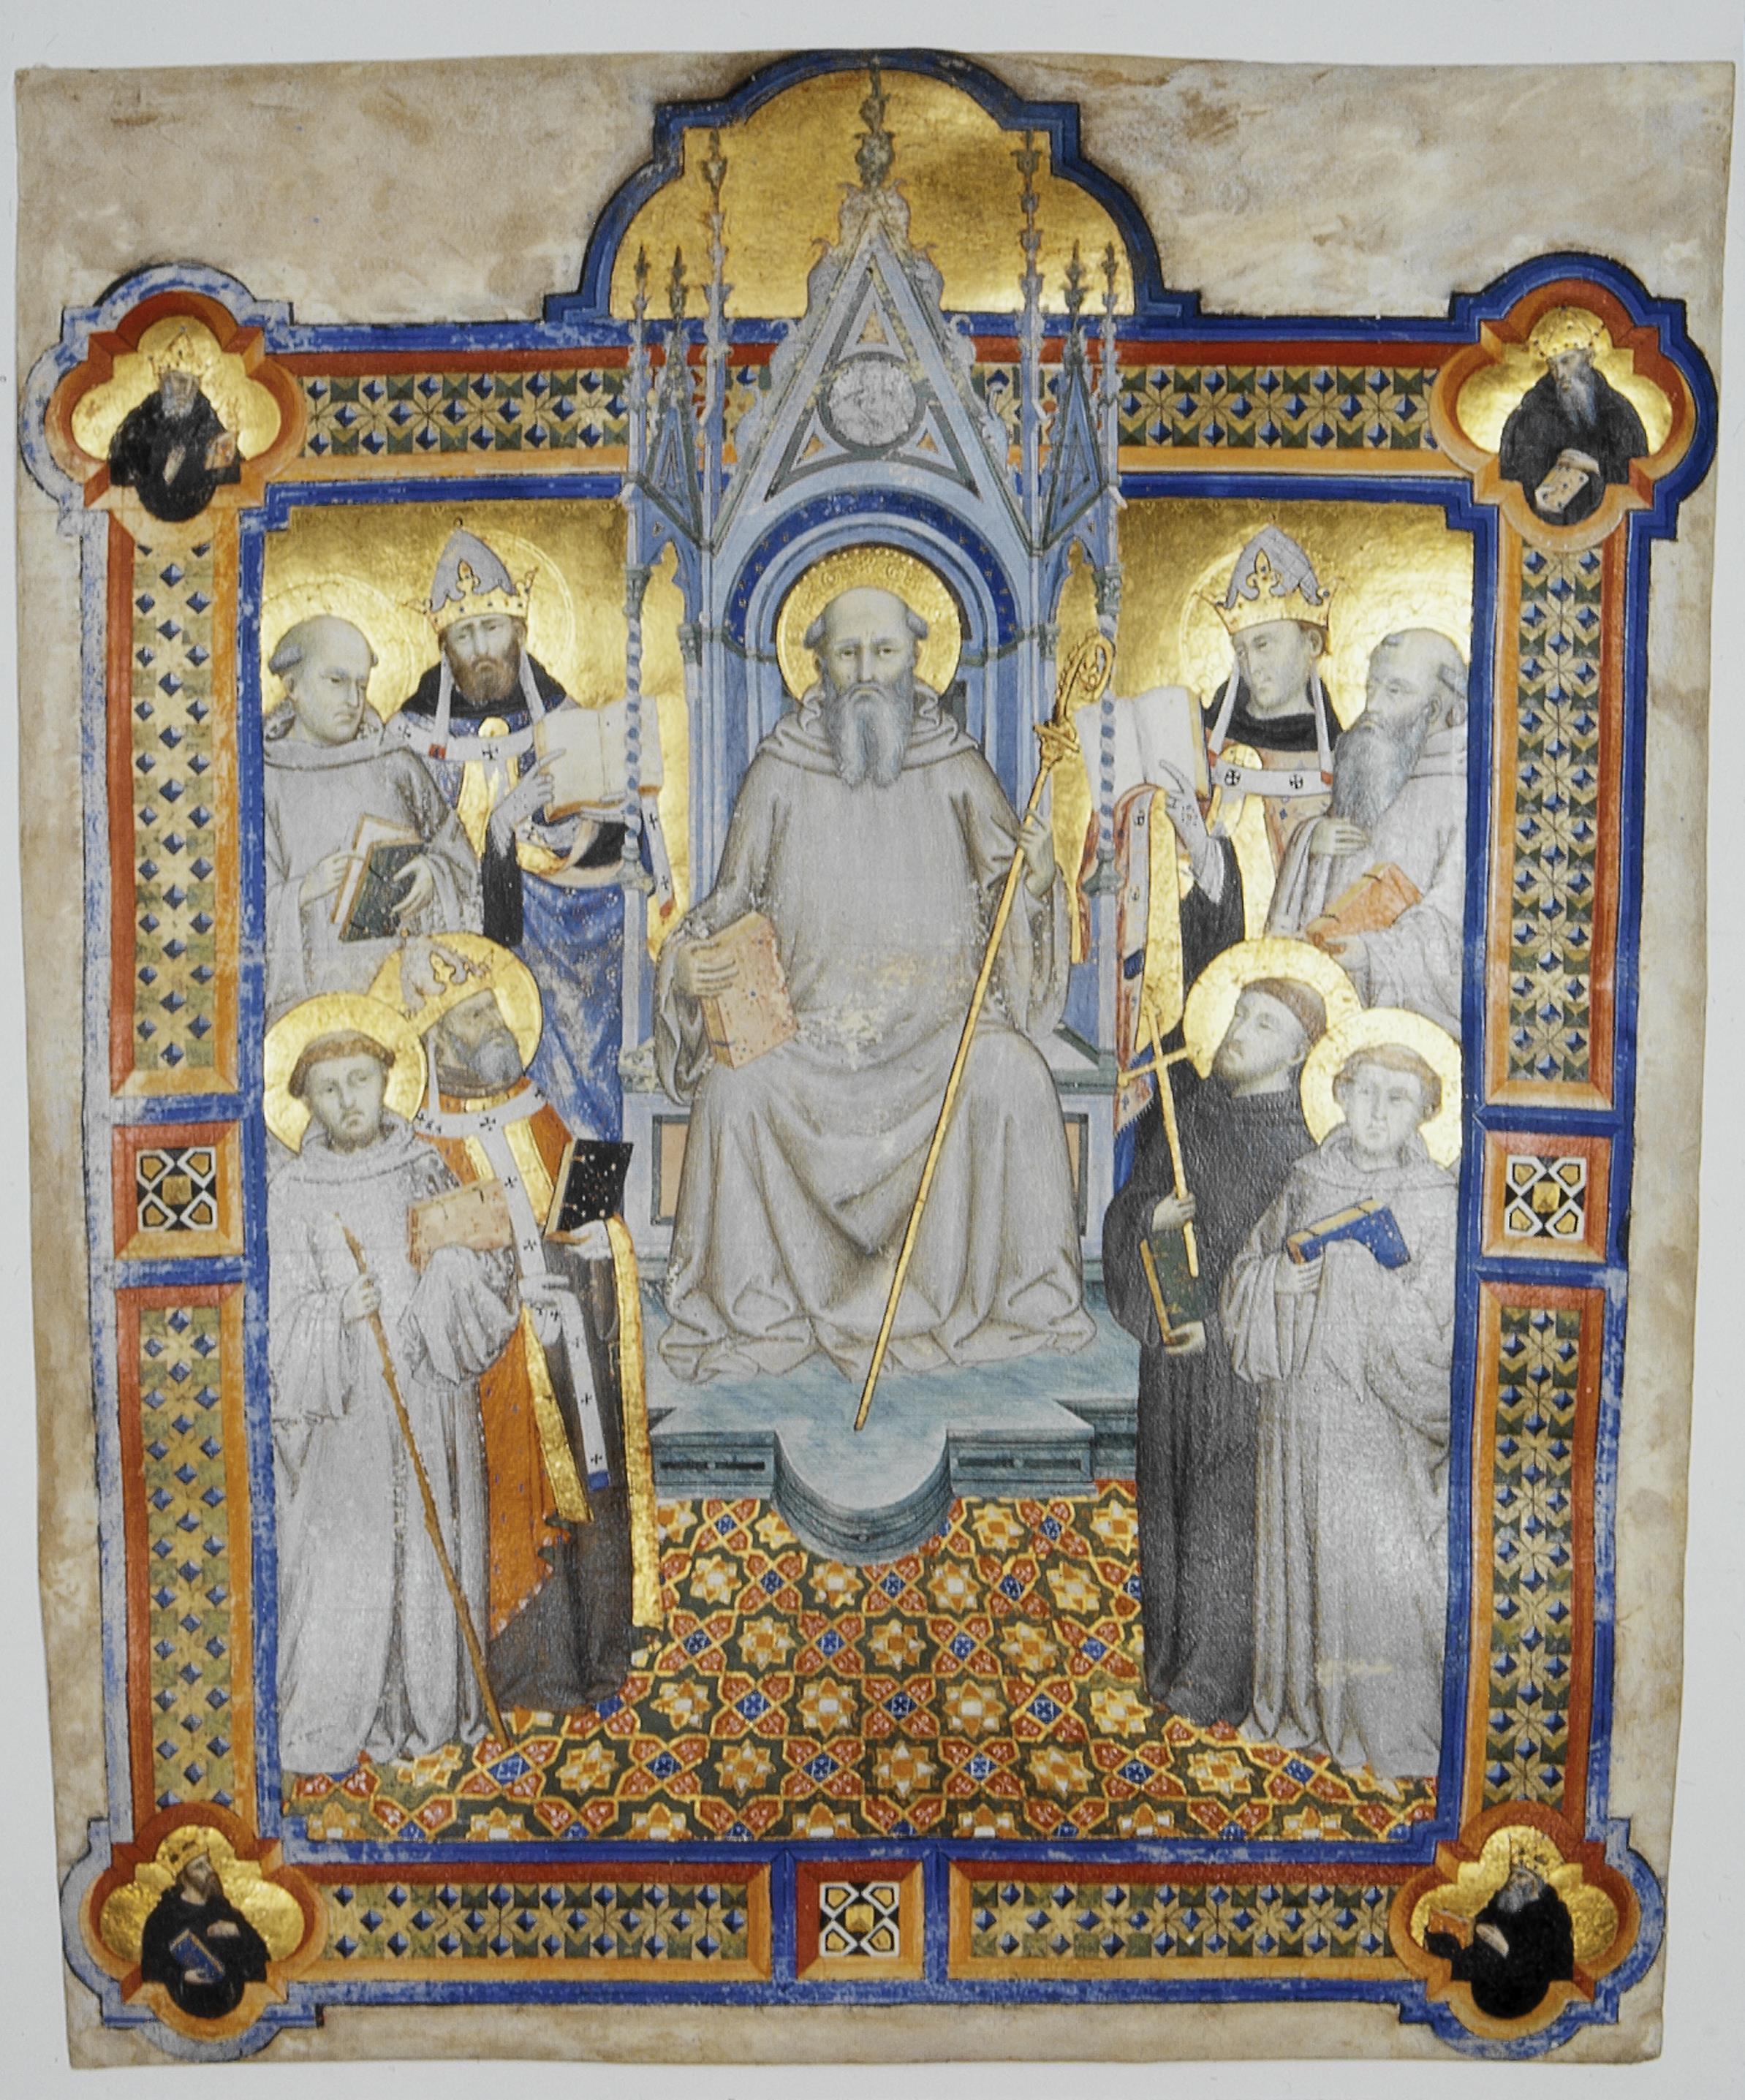 Fragmento de Santoral Camaldulense - São Bento no trono com oito santos